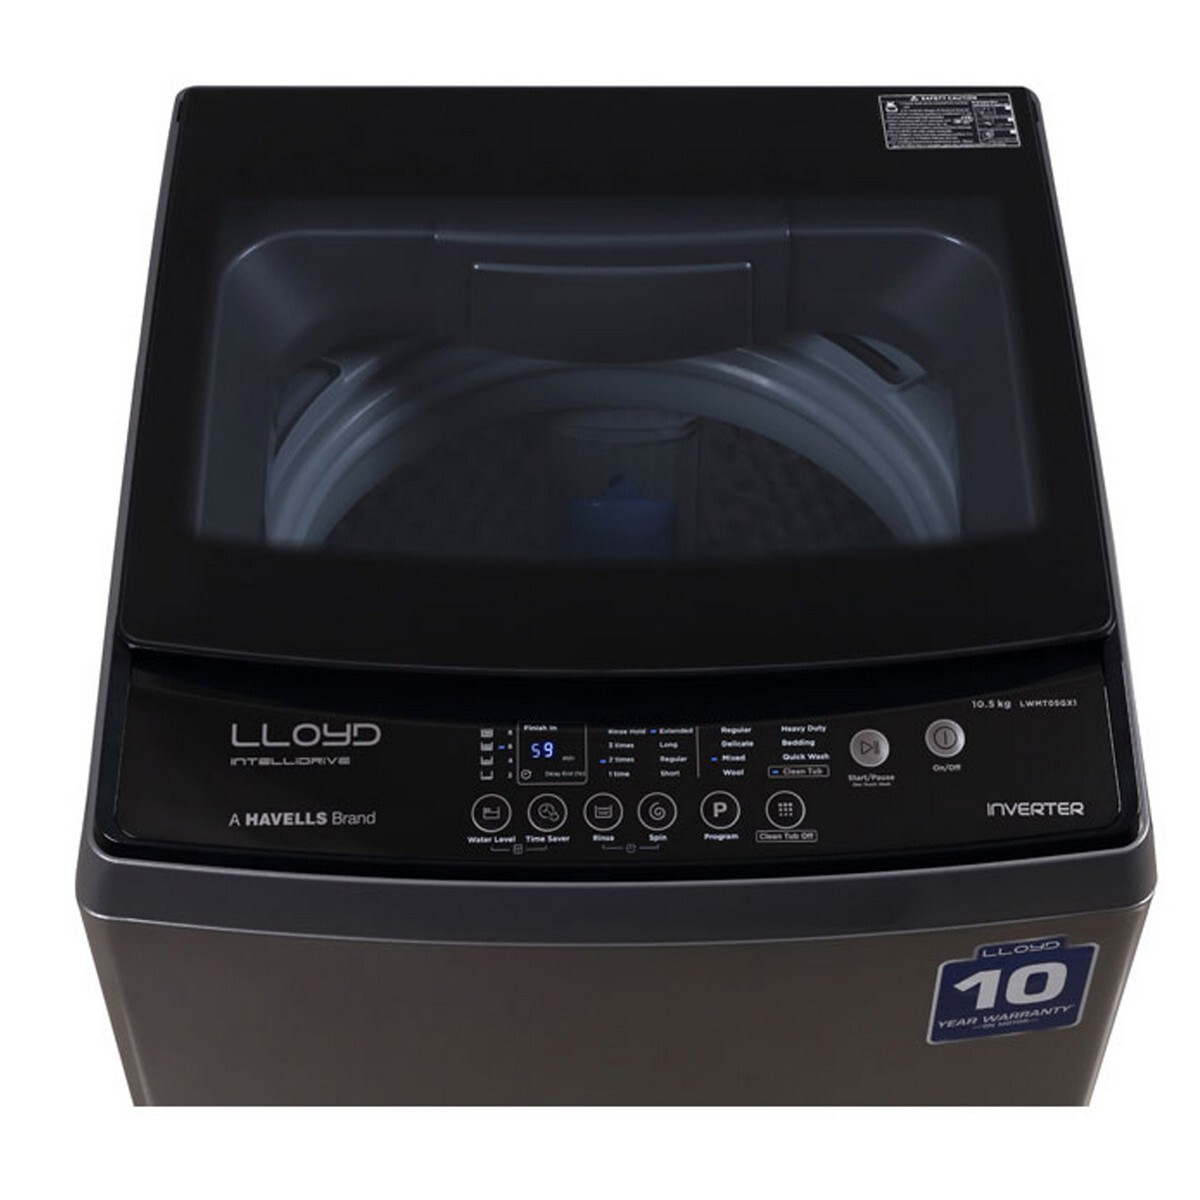 Lloyd Top Load Washing Machine GLWMT05GX1 10.5Kg